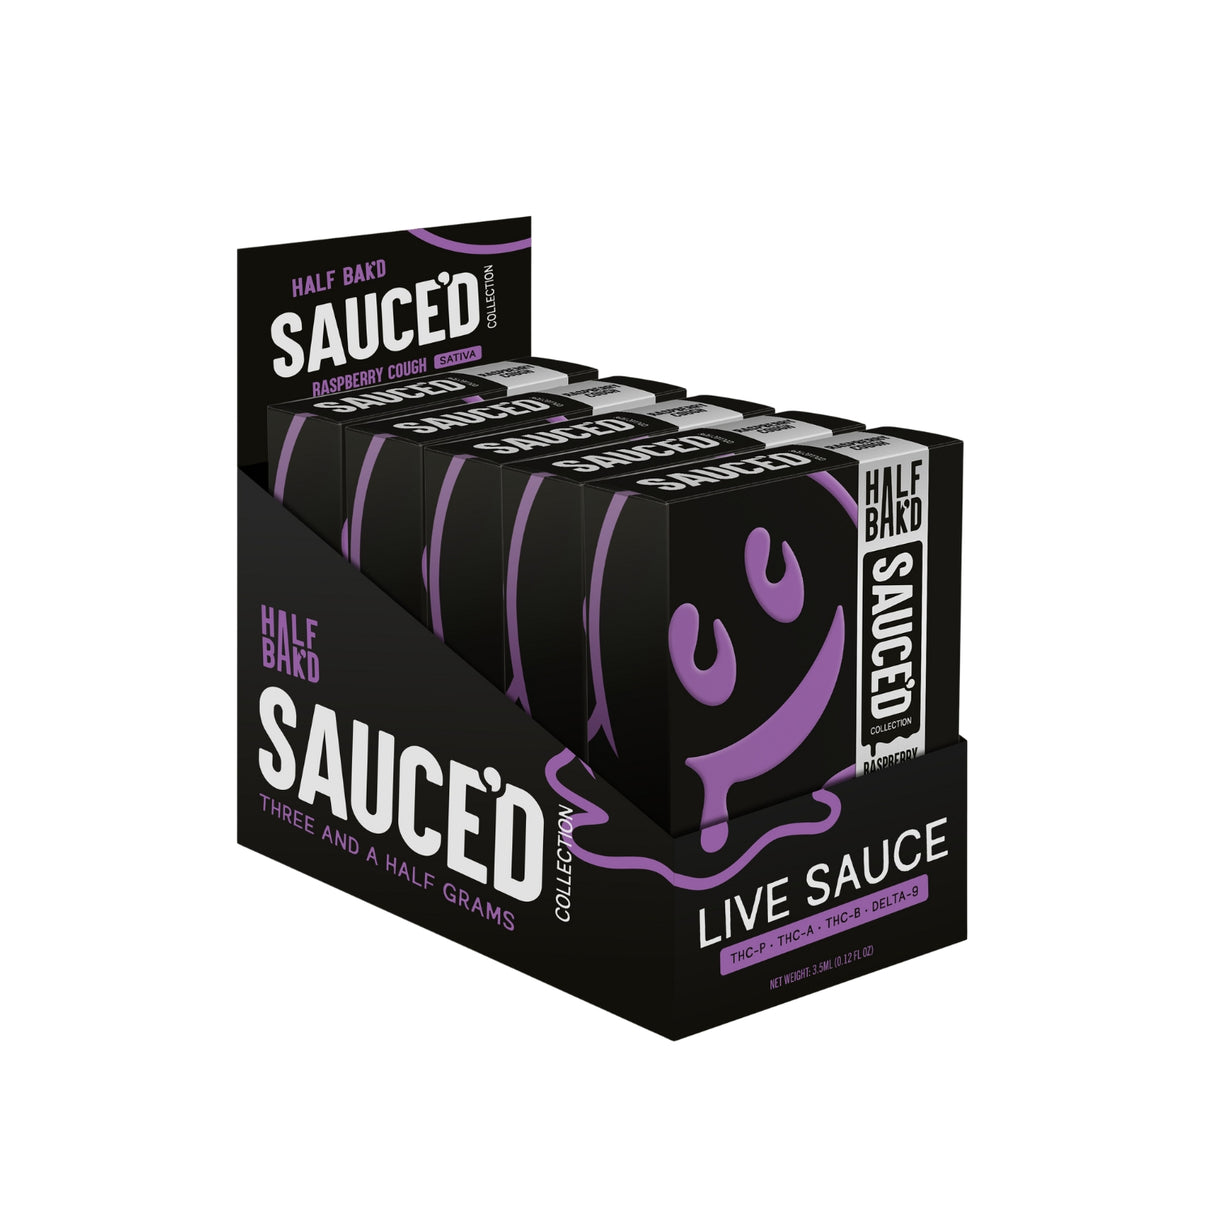 HALF BAK'D Live Sauce Collection - 4g Disposable